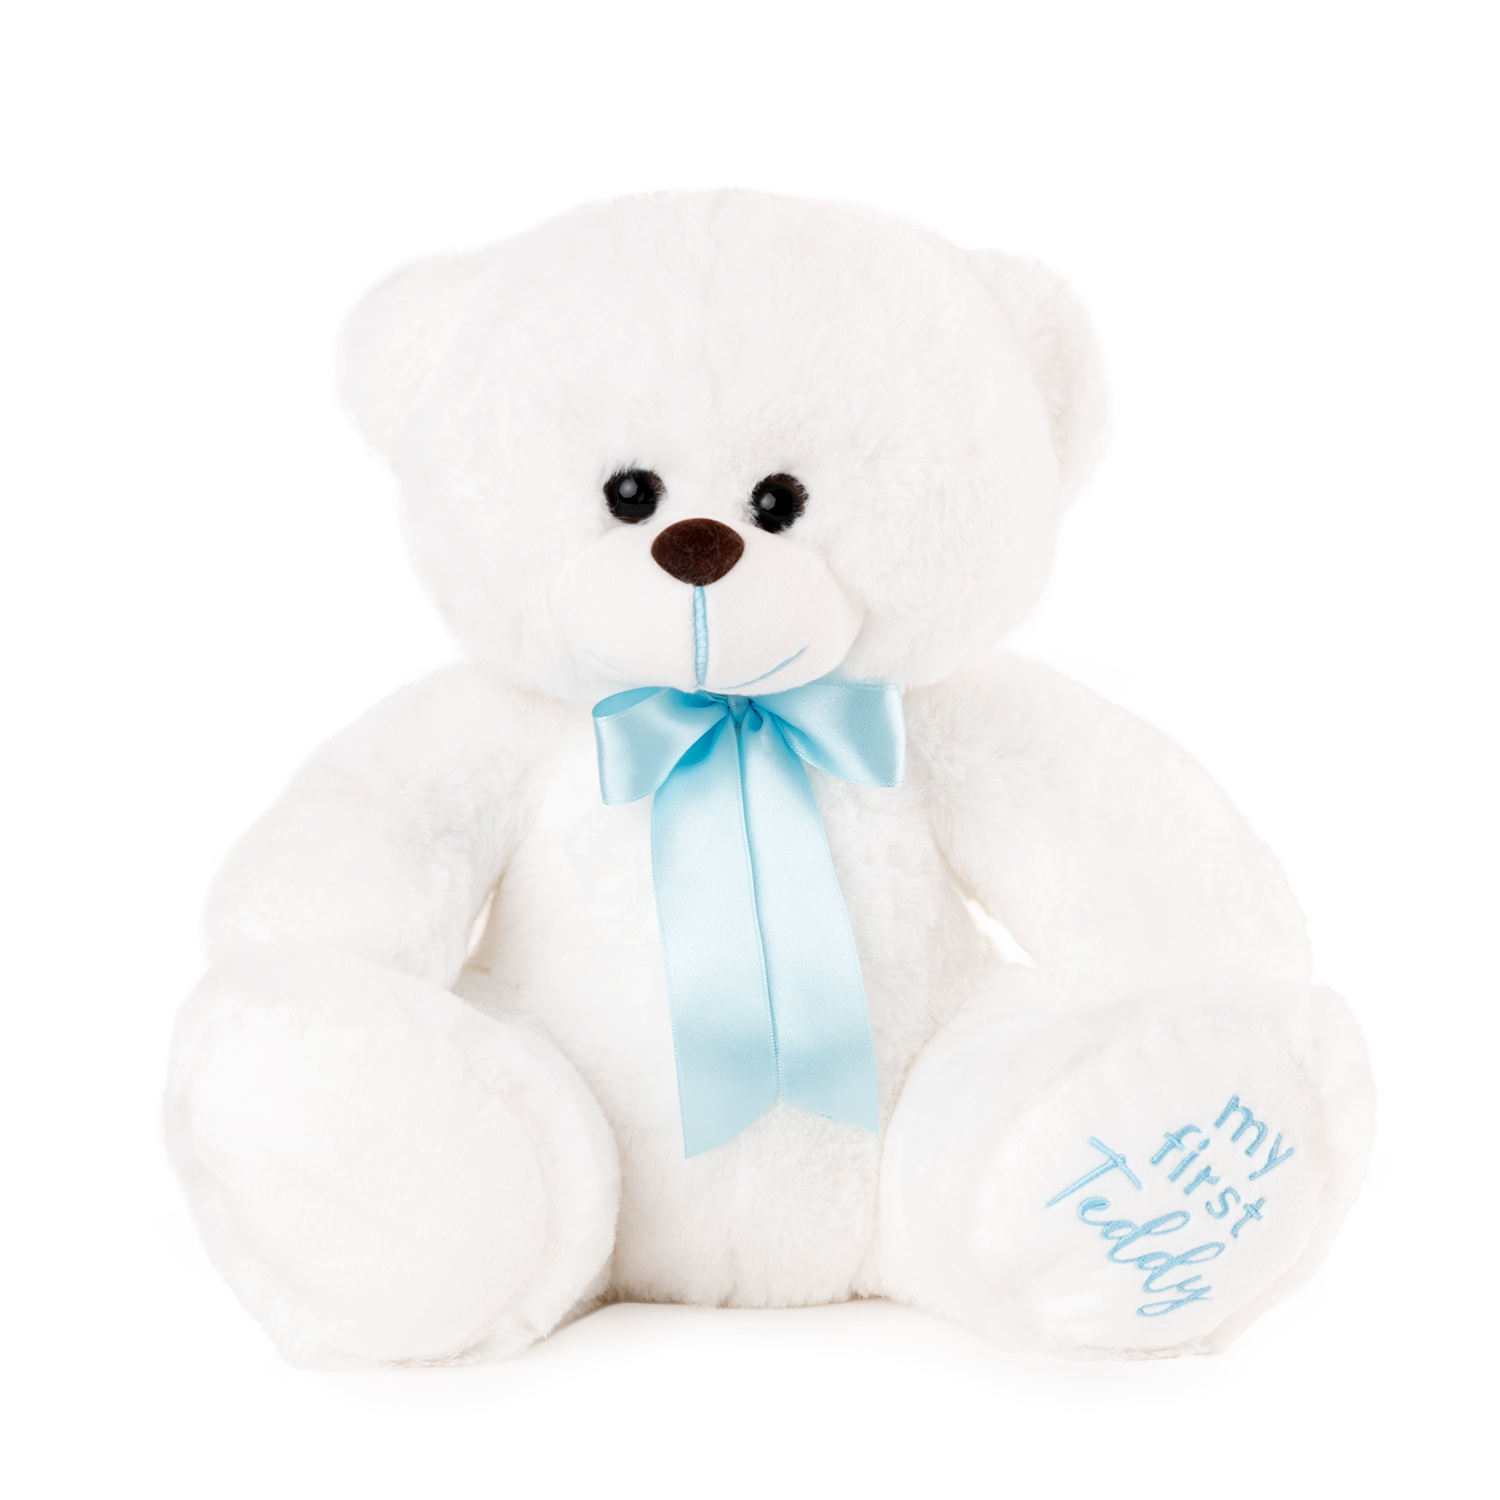 Teddy bear "My first teddy" - White